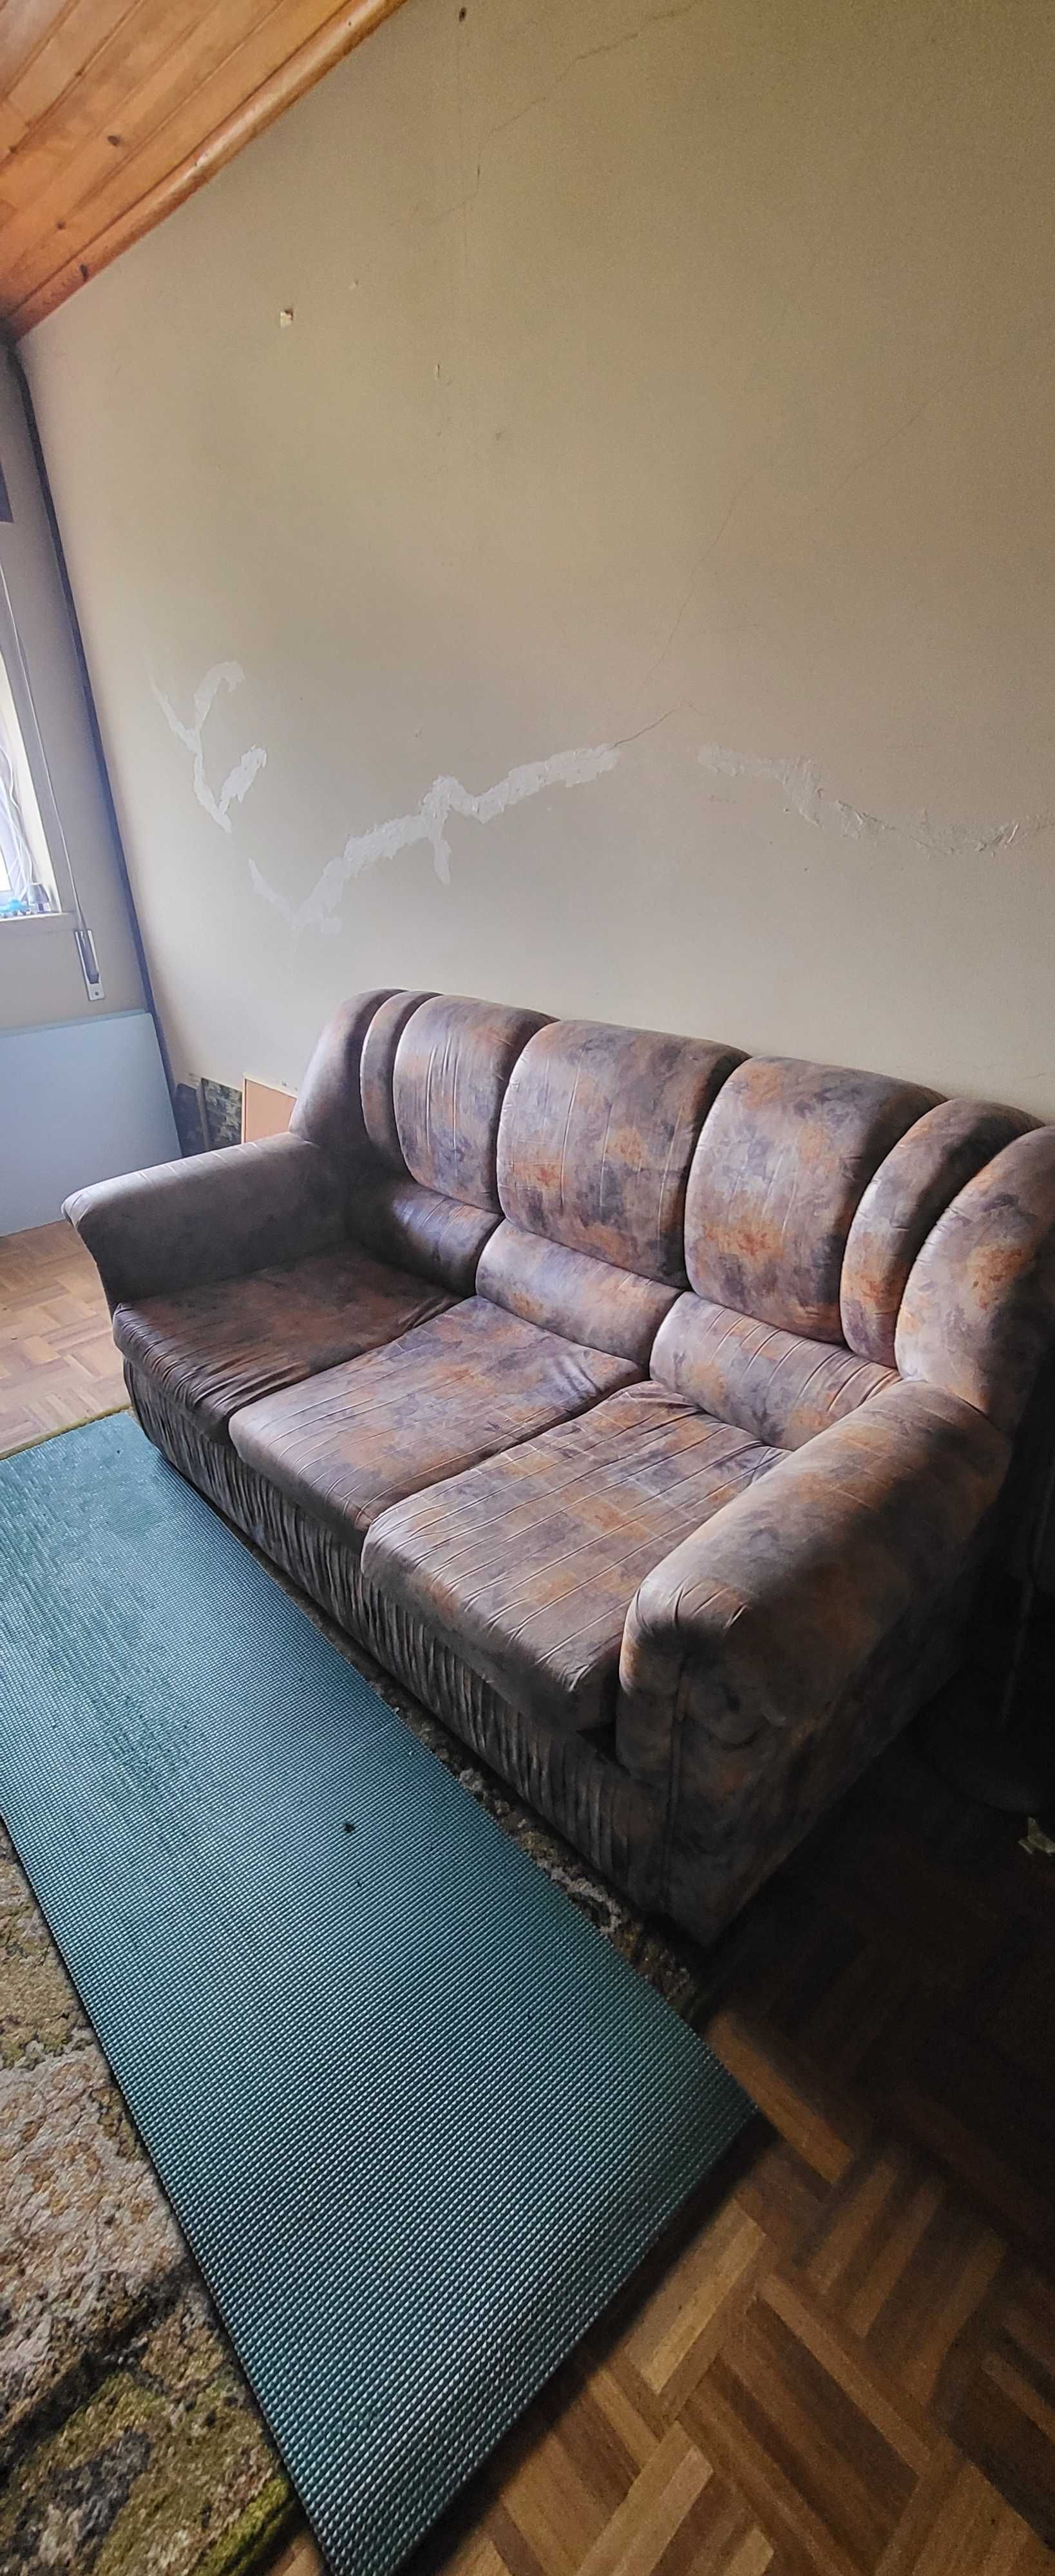 Oportunidade unica, Vendo sofá cama